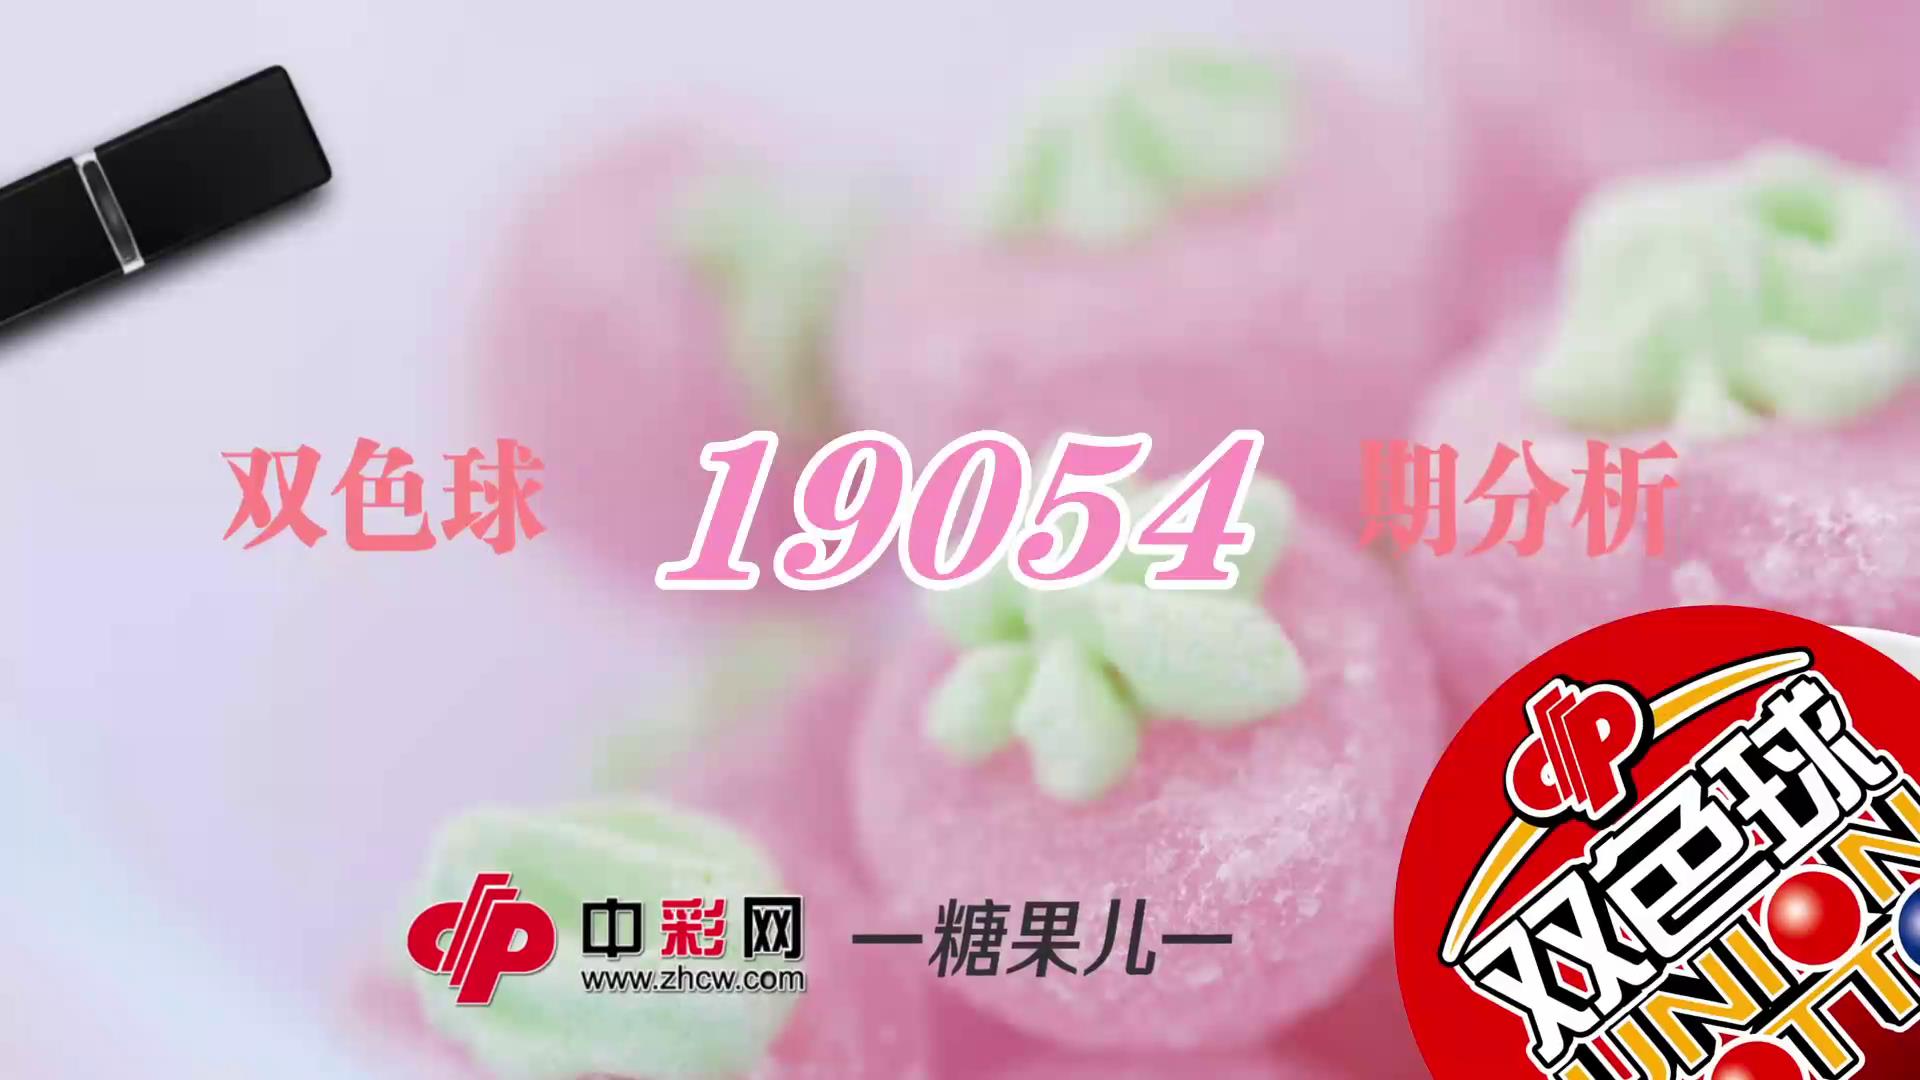 【中彩视频】糖果儿双色球第19054期